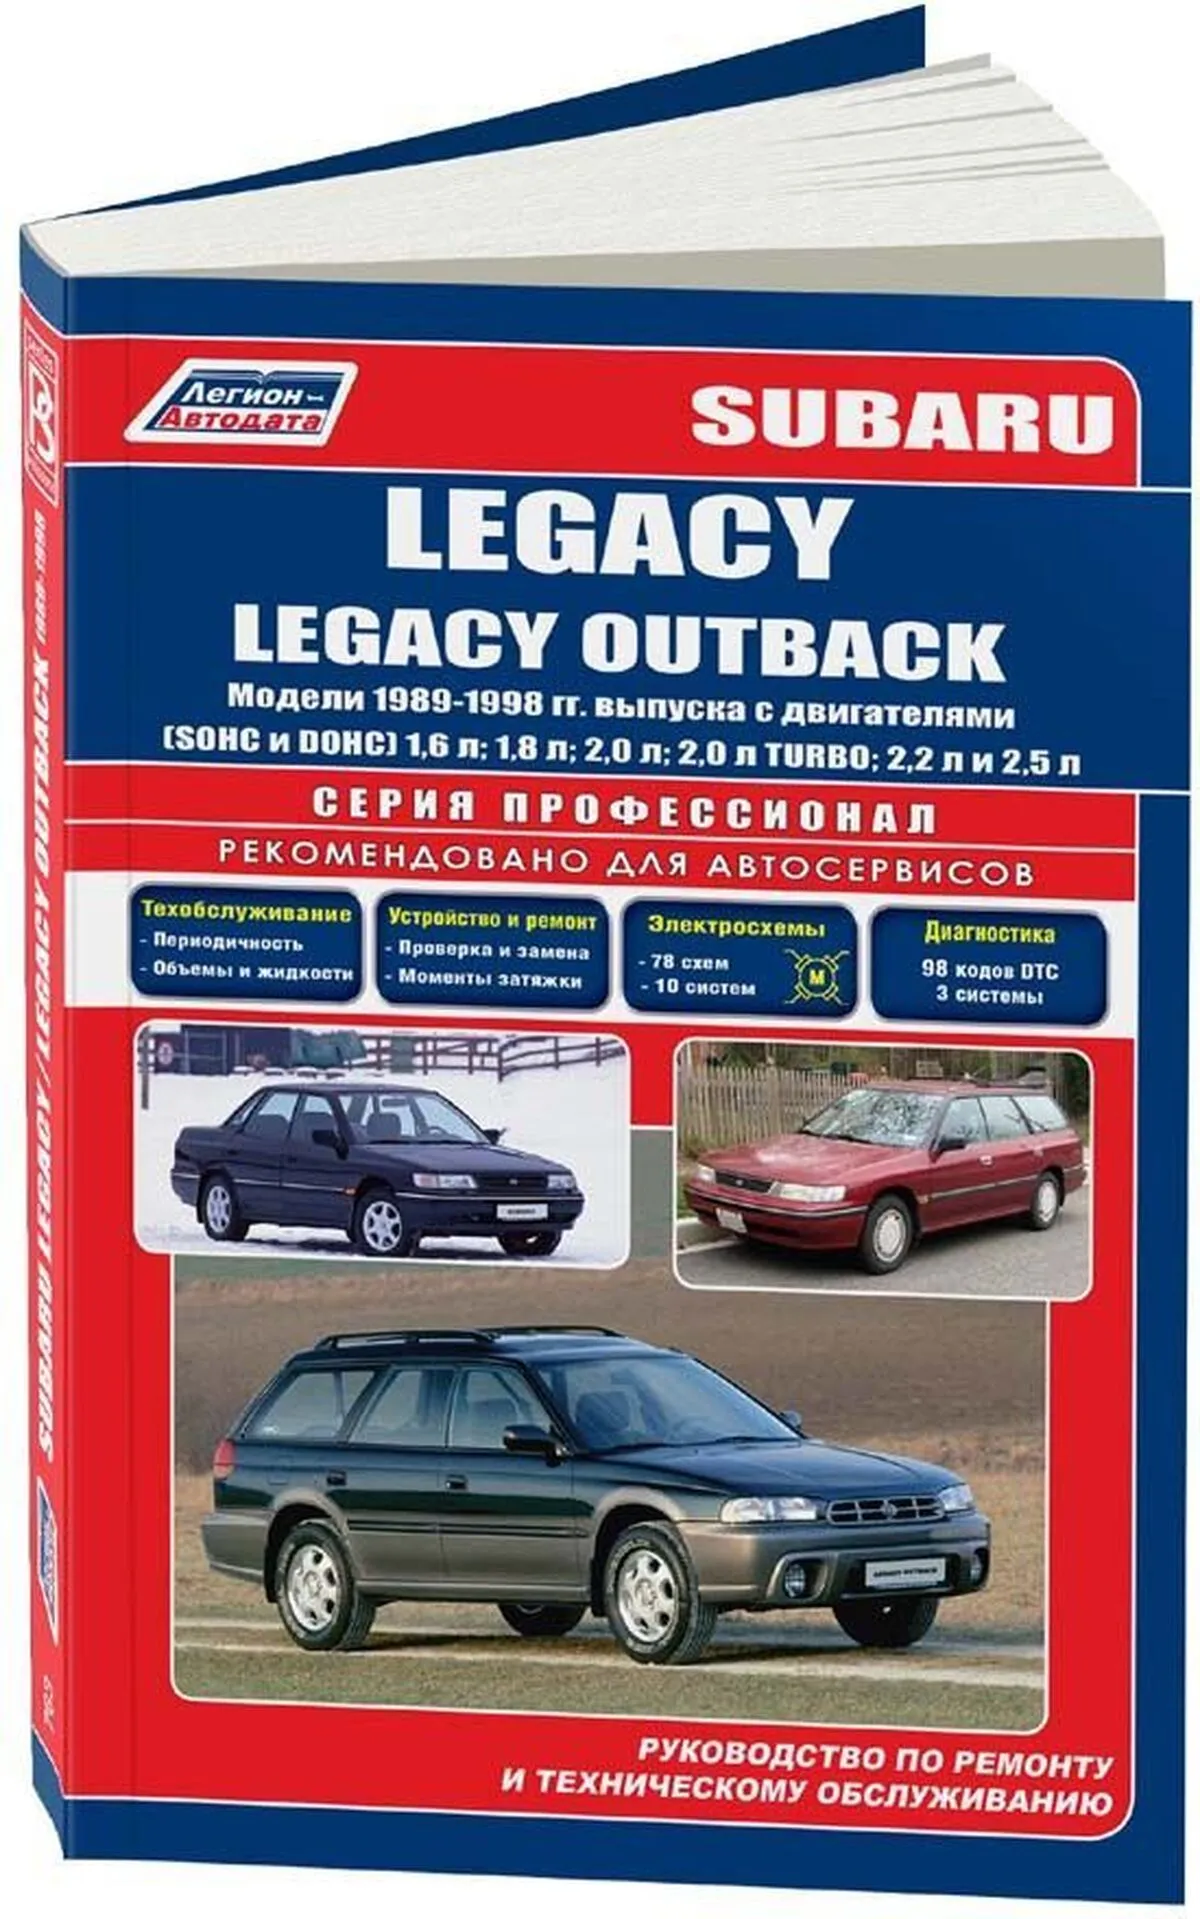 Книга: SUBARU LEGACY / OUTBACK (б) 1989-1998 г.в. рем., экспл., то | Легион-Aвтодата